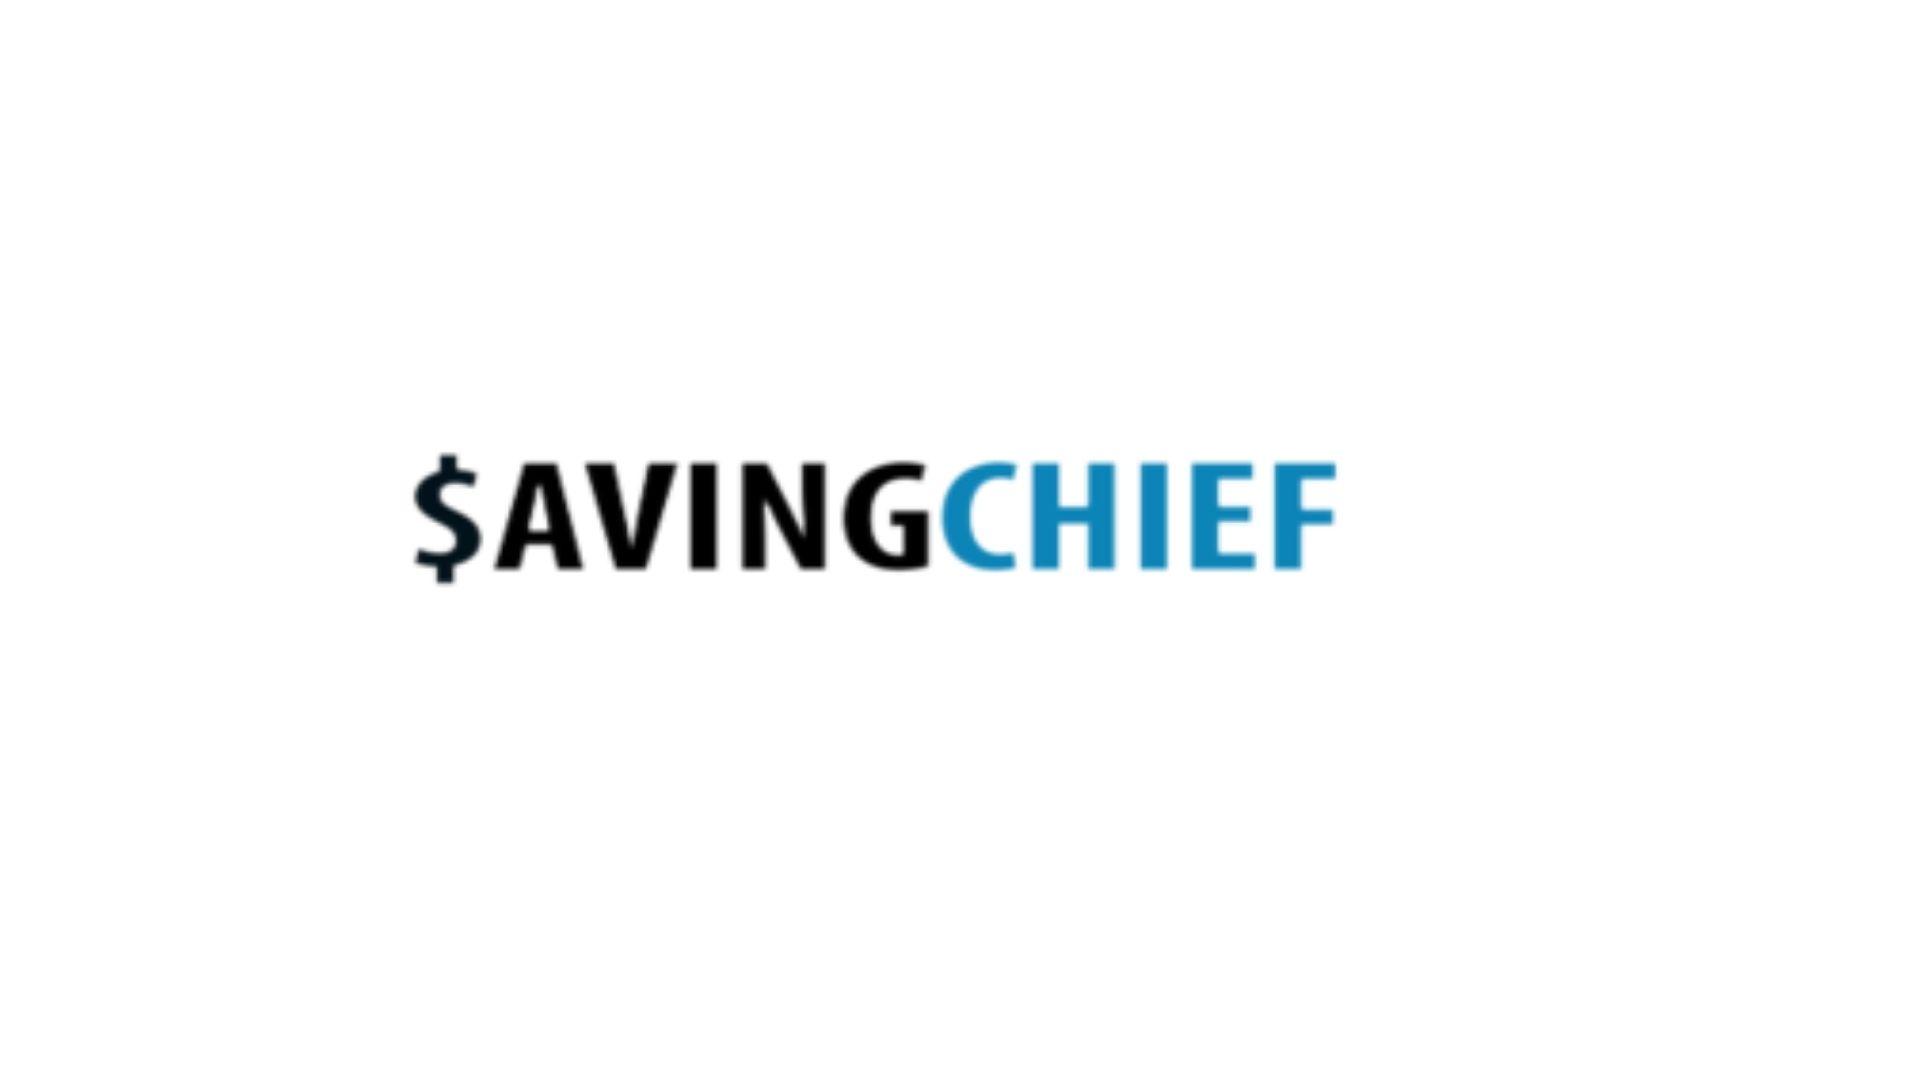 Saving Chief